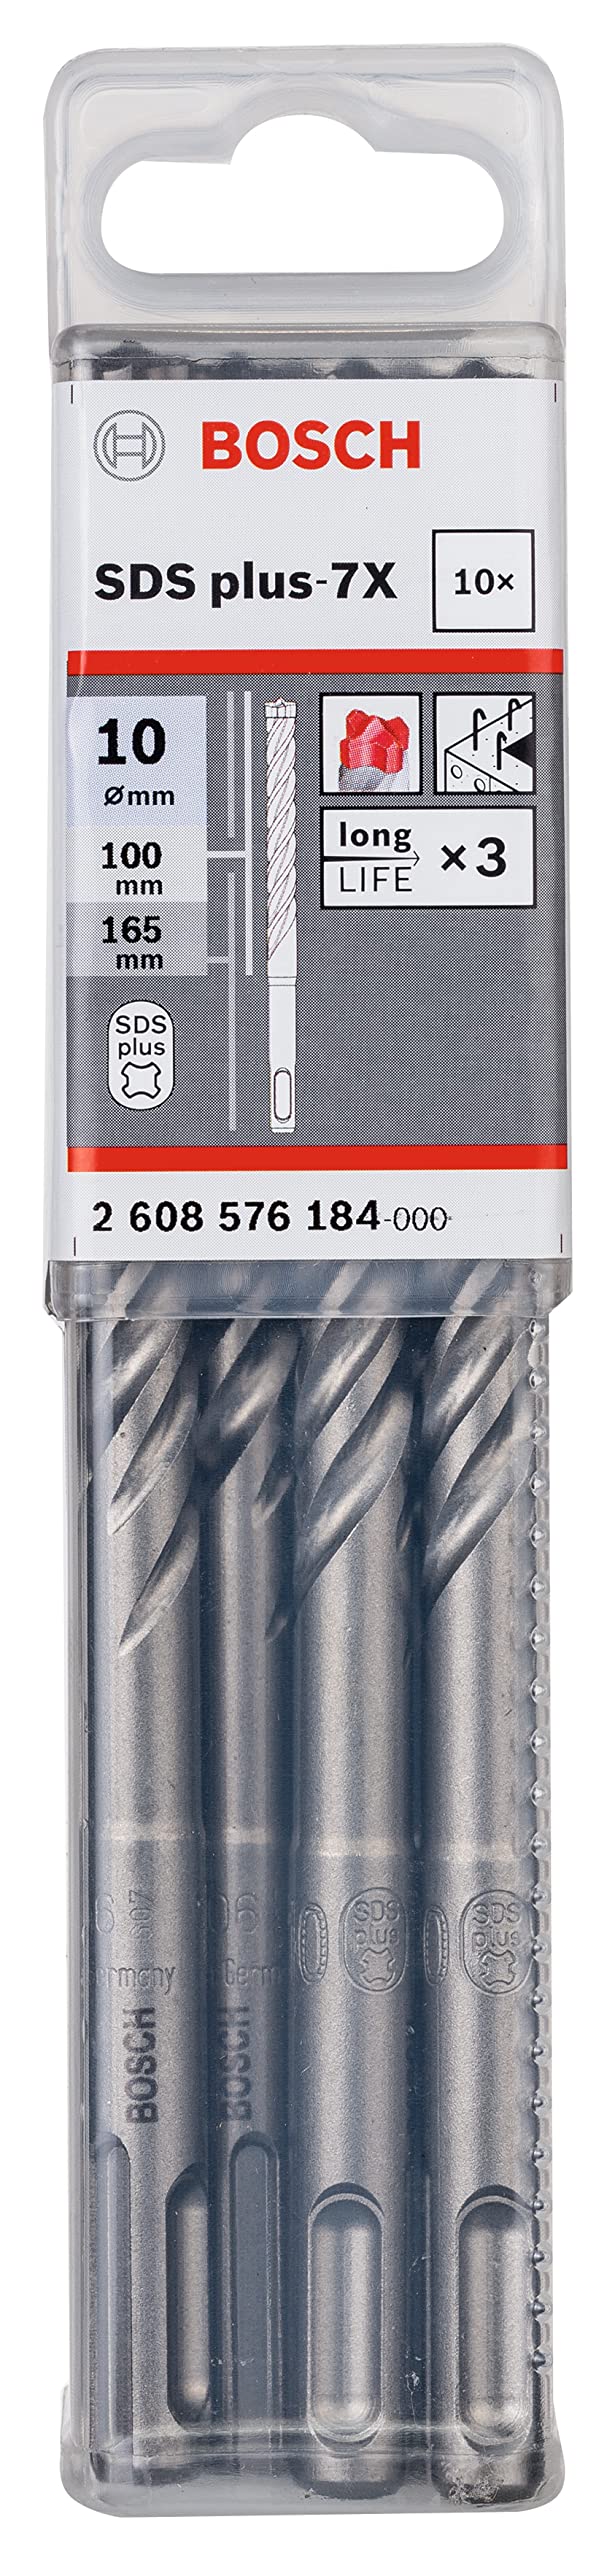 Bosch Professional 10 tlg. Hammerbohrer SDS Plus-7X (für Beton und Mauerwerk, 10 x 100 x 165 mm, Zubehör Bohrhammer)